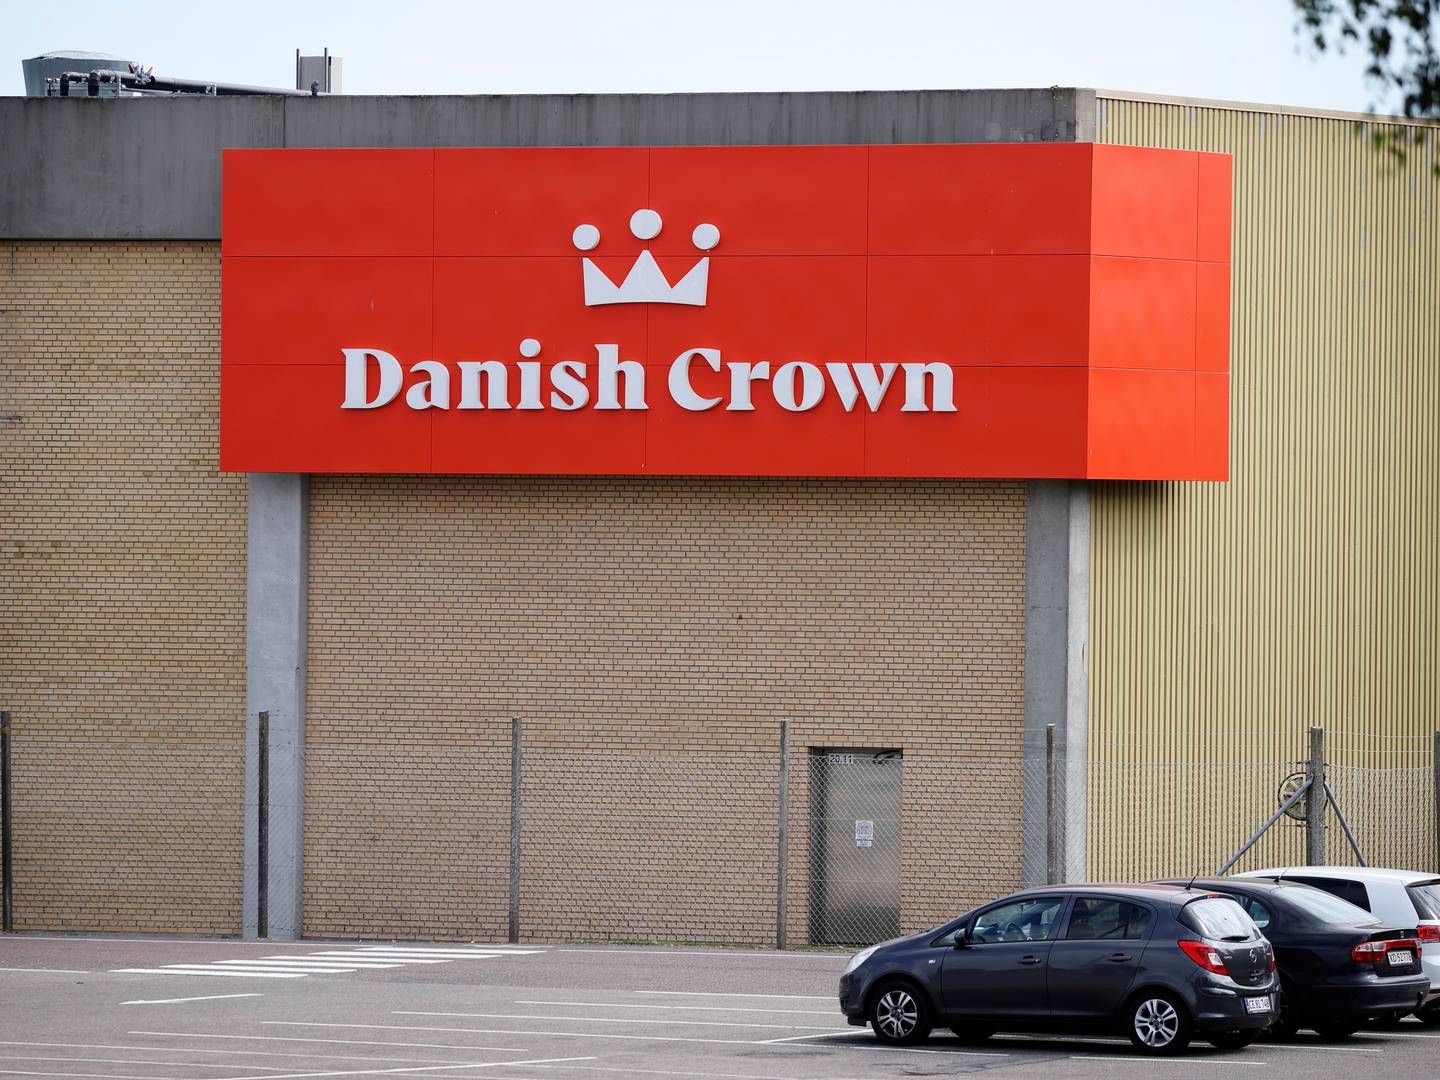 Danish Crown accepterer samtlige anklager mod virksomheden, der blev fremlagt i klimaretssagen – også dem, de ikke blev dømt for. | Photo: Jens Dresling/Ritzau Scanpix